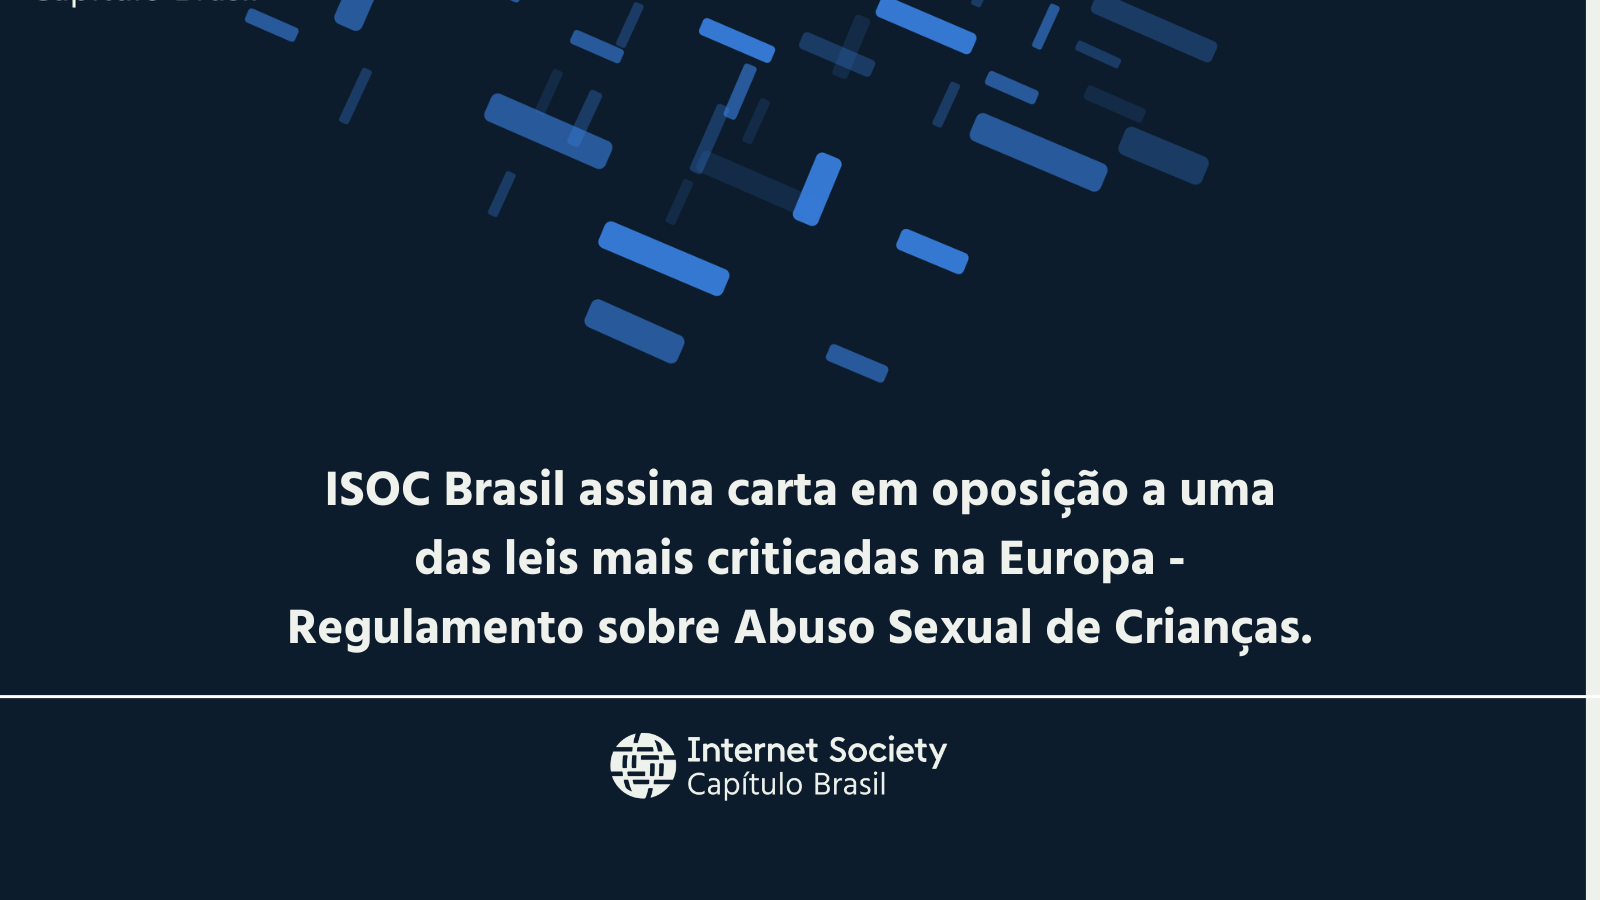 ISOC Brasil assina carta em oposição a uma das leis mais criticadas na Europa - Regulamento sobre Abuso Sexual de Crianças.